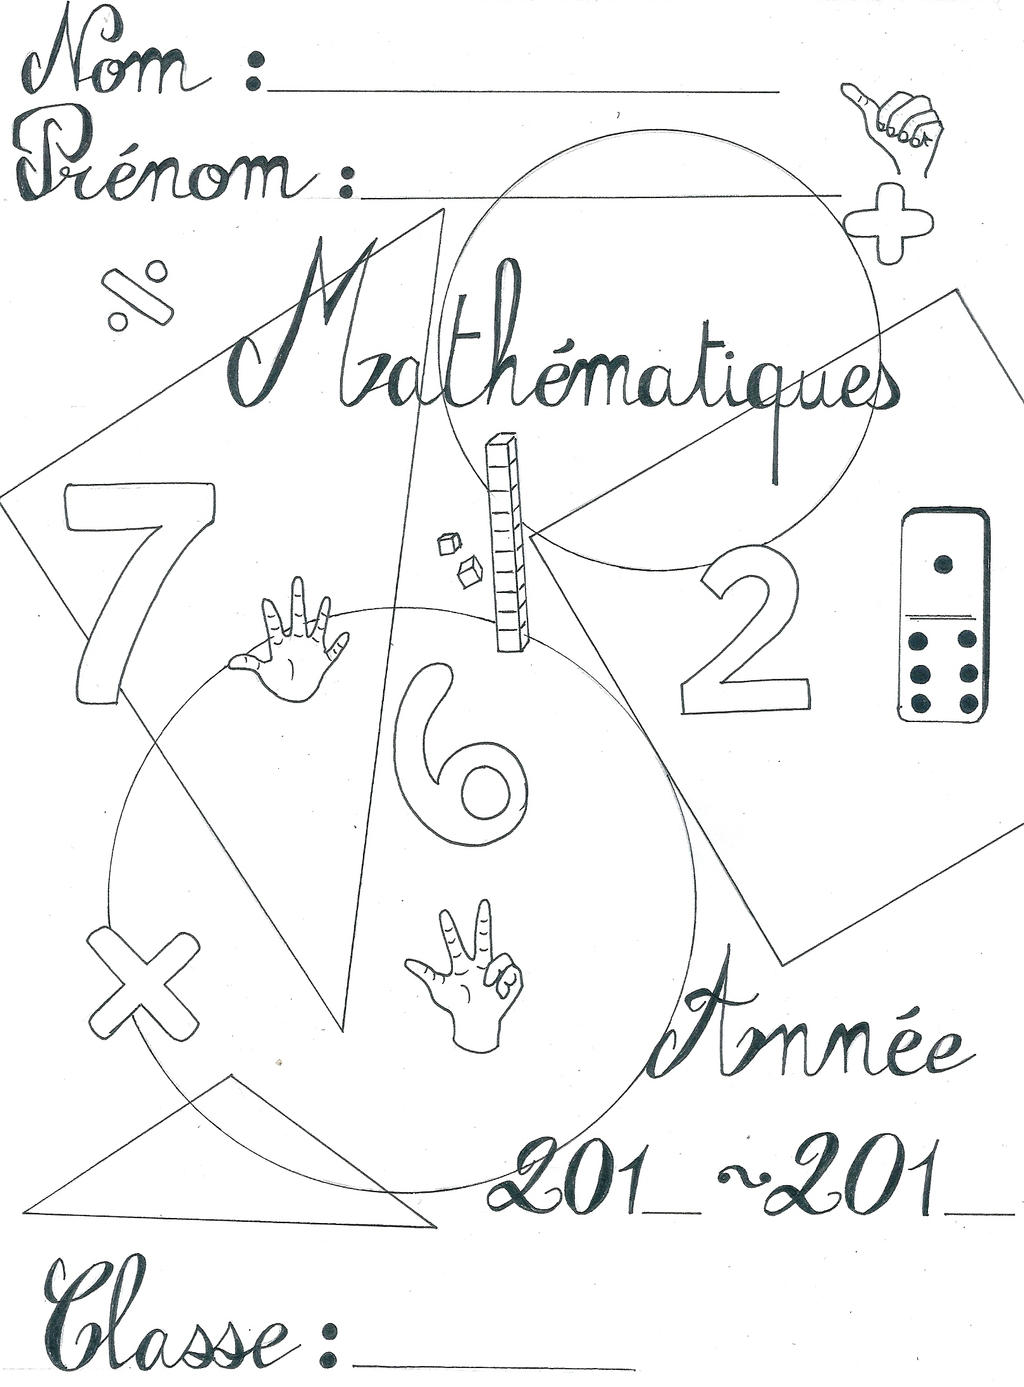 Page De Garde En Mathématiques Page De Garde Maths by Nimidias on DeviantArt